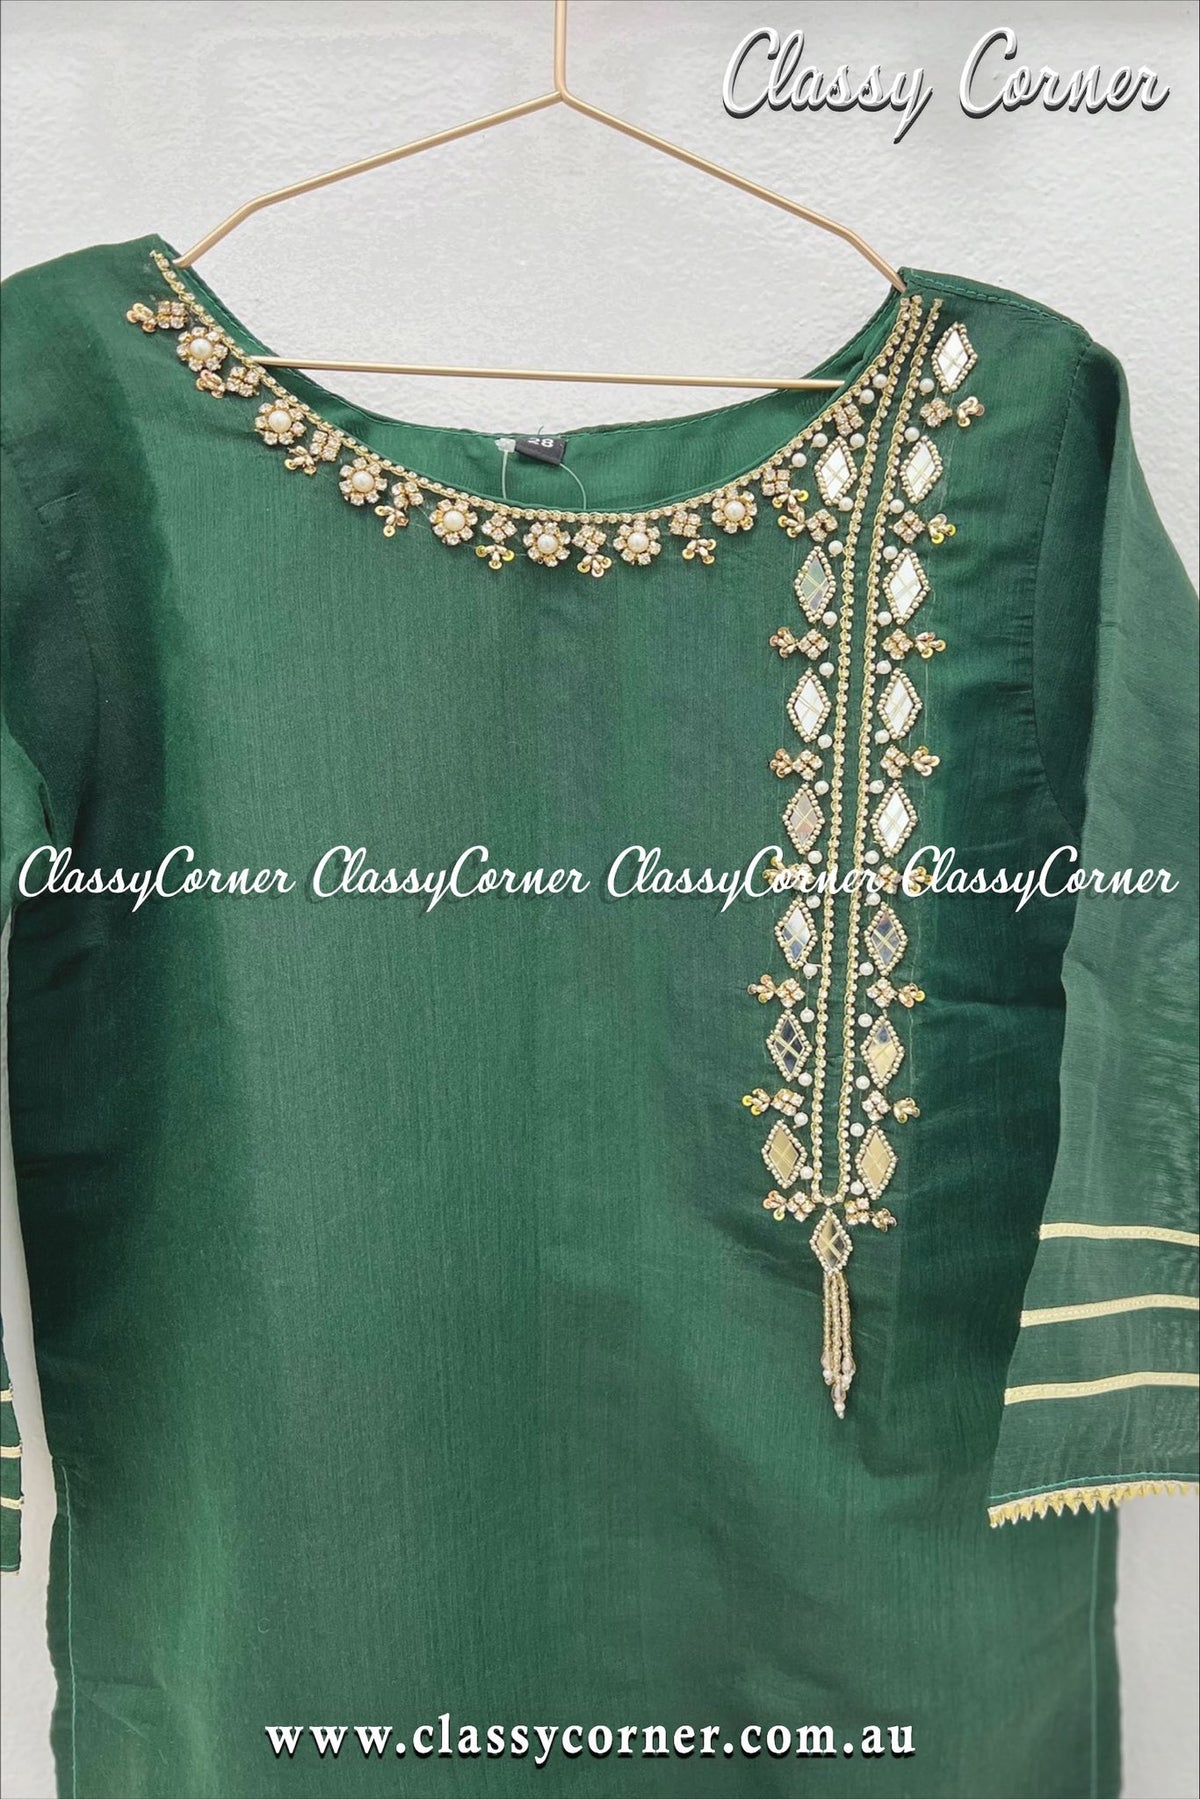 Green Girls Pakistani Outfit - Classy Corner